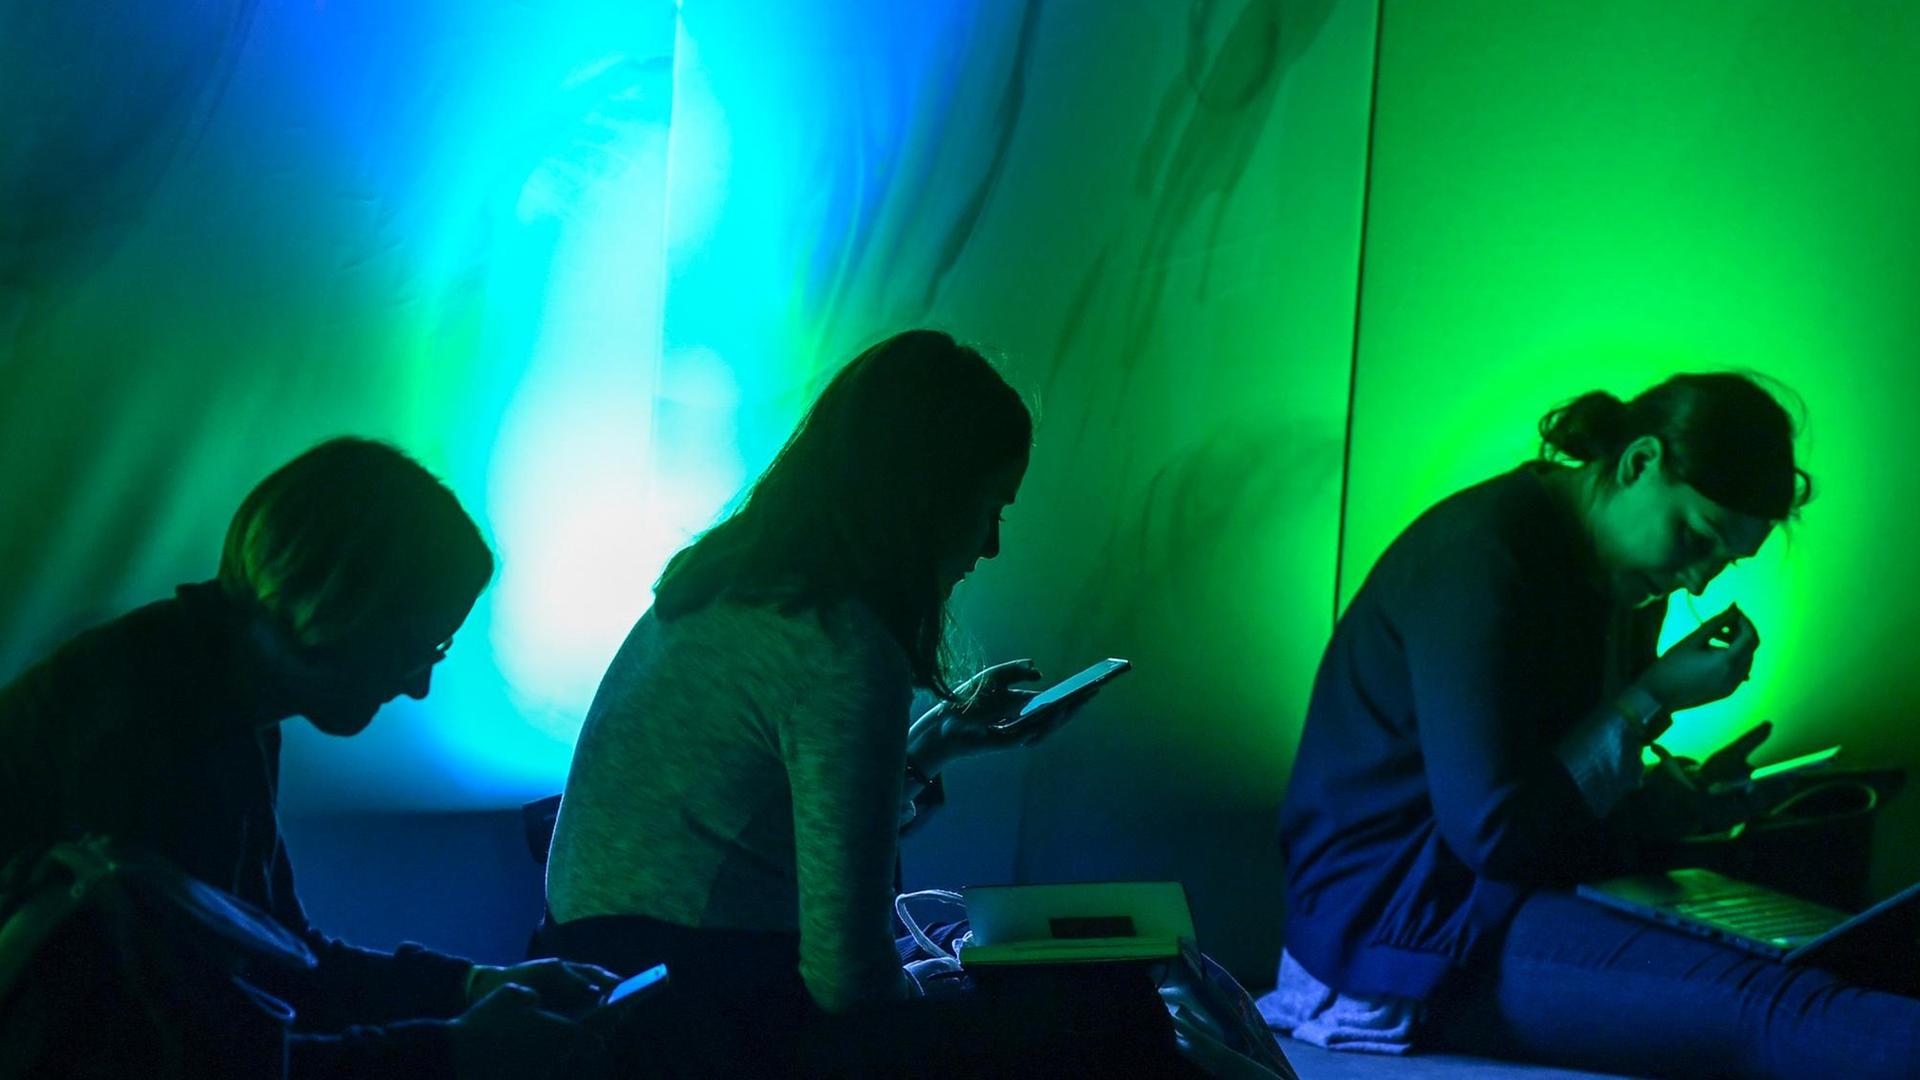 Drei Personen sitzen in einem grünblau dunkel erleuchtetem Raum mit ihren Smartphones in der Hand.